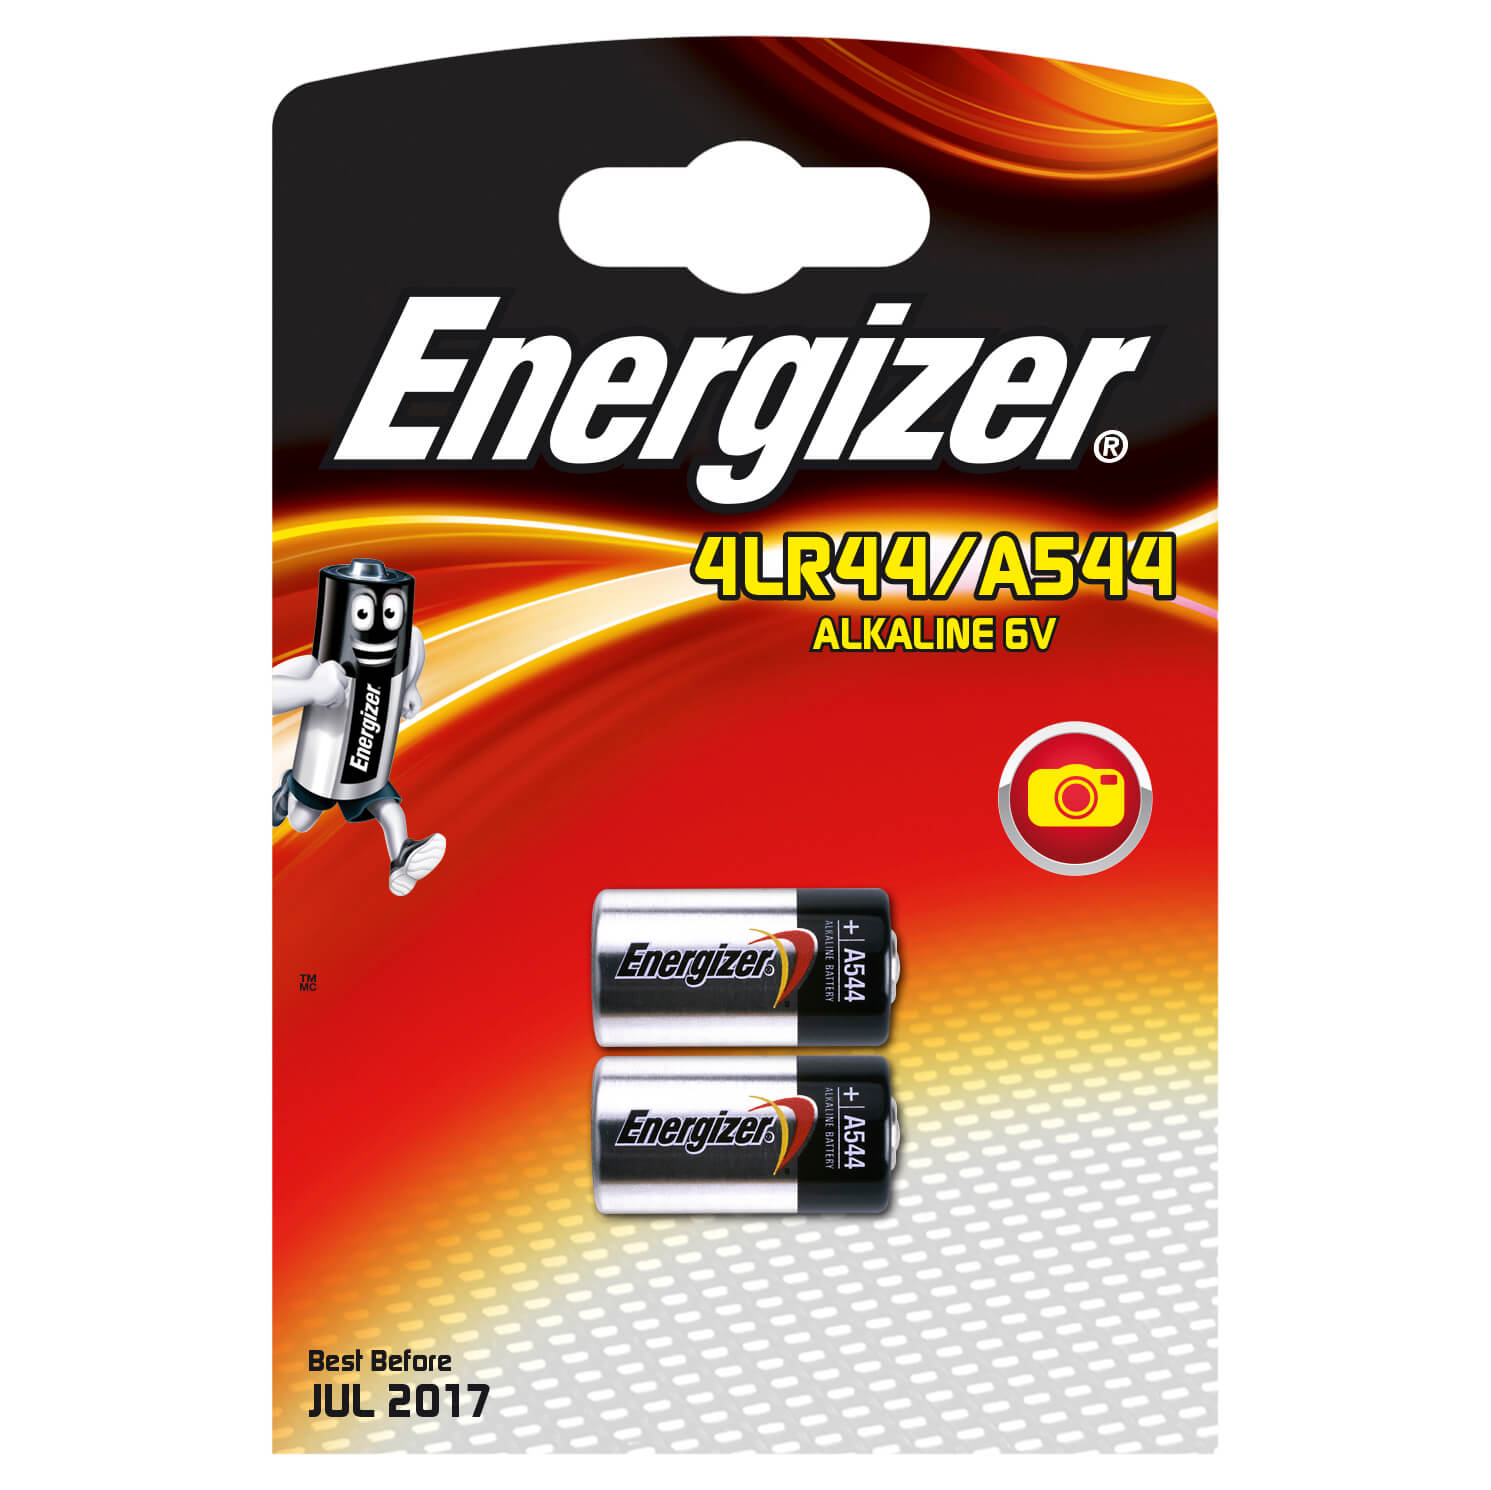 ENERGIZER Battery 4LR44/A544 Alkaline 2-pack